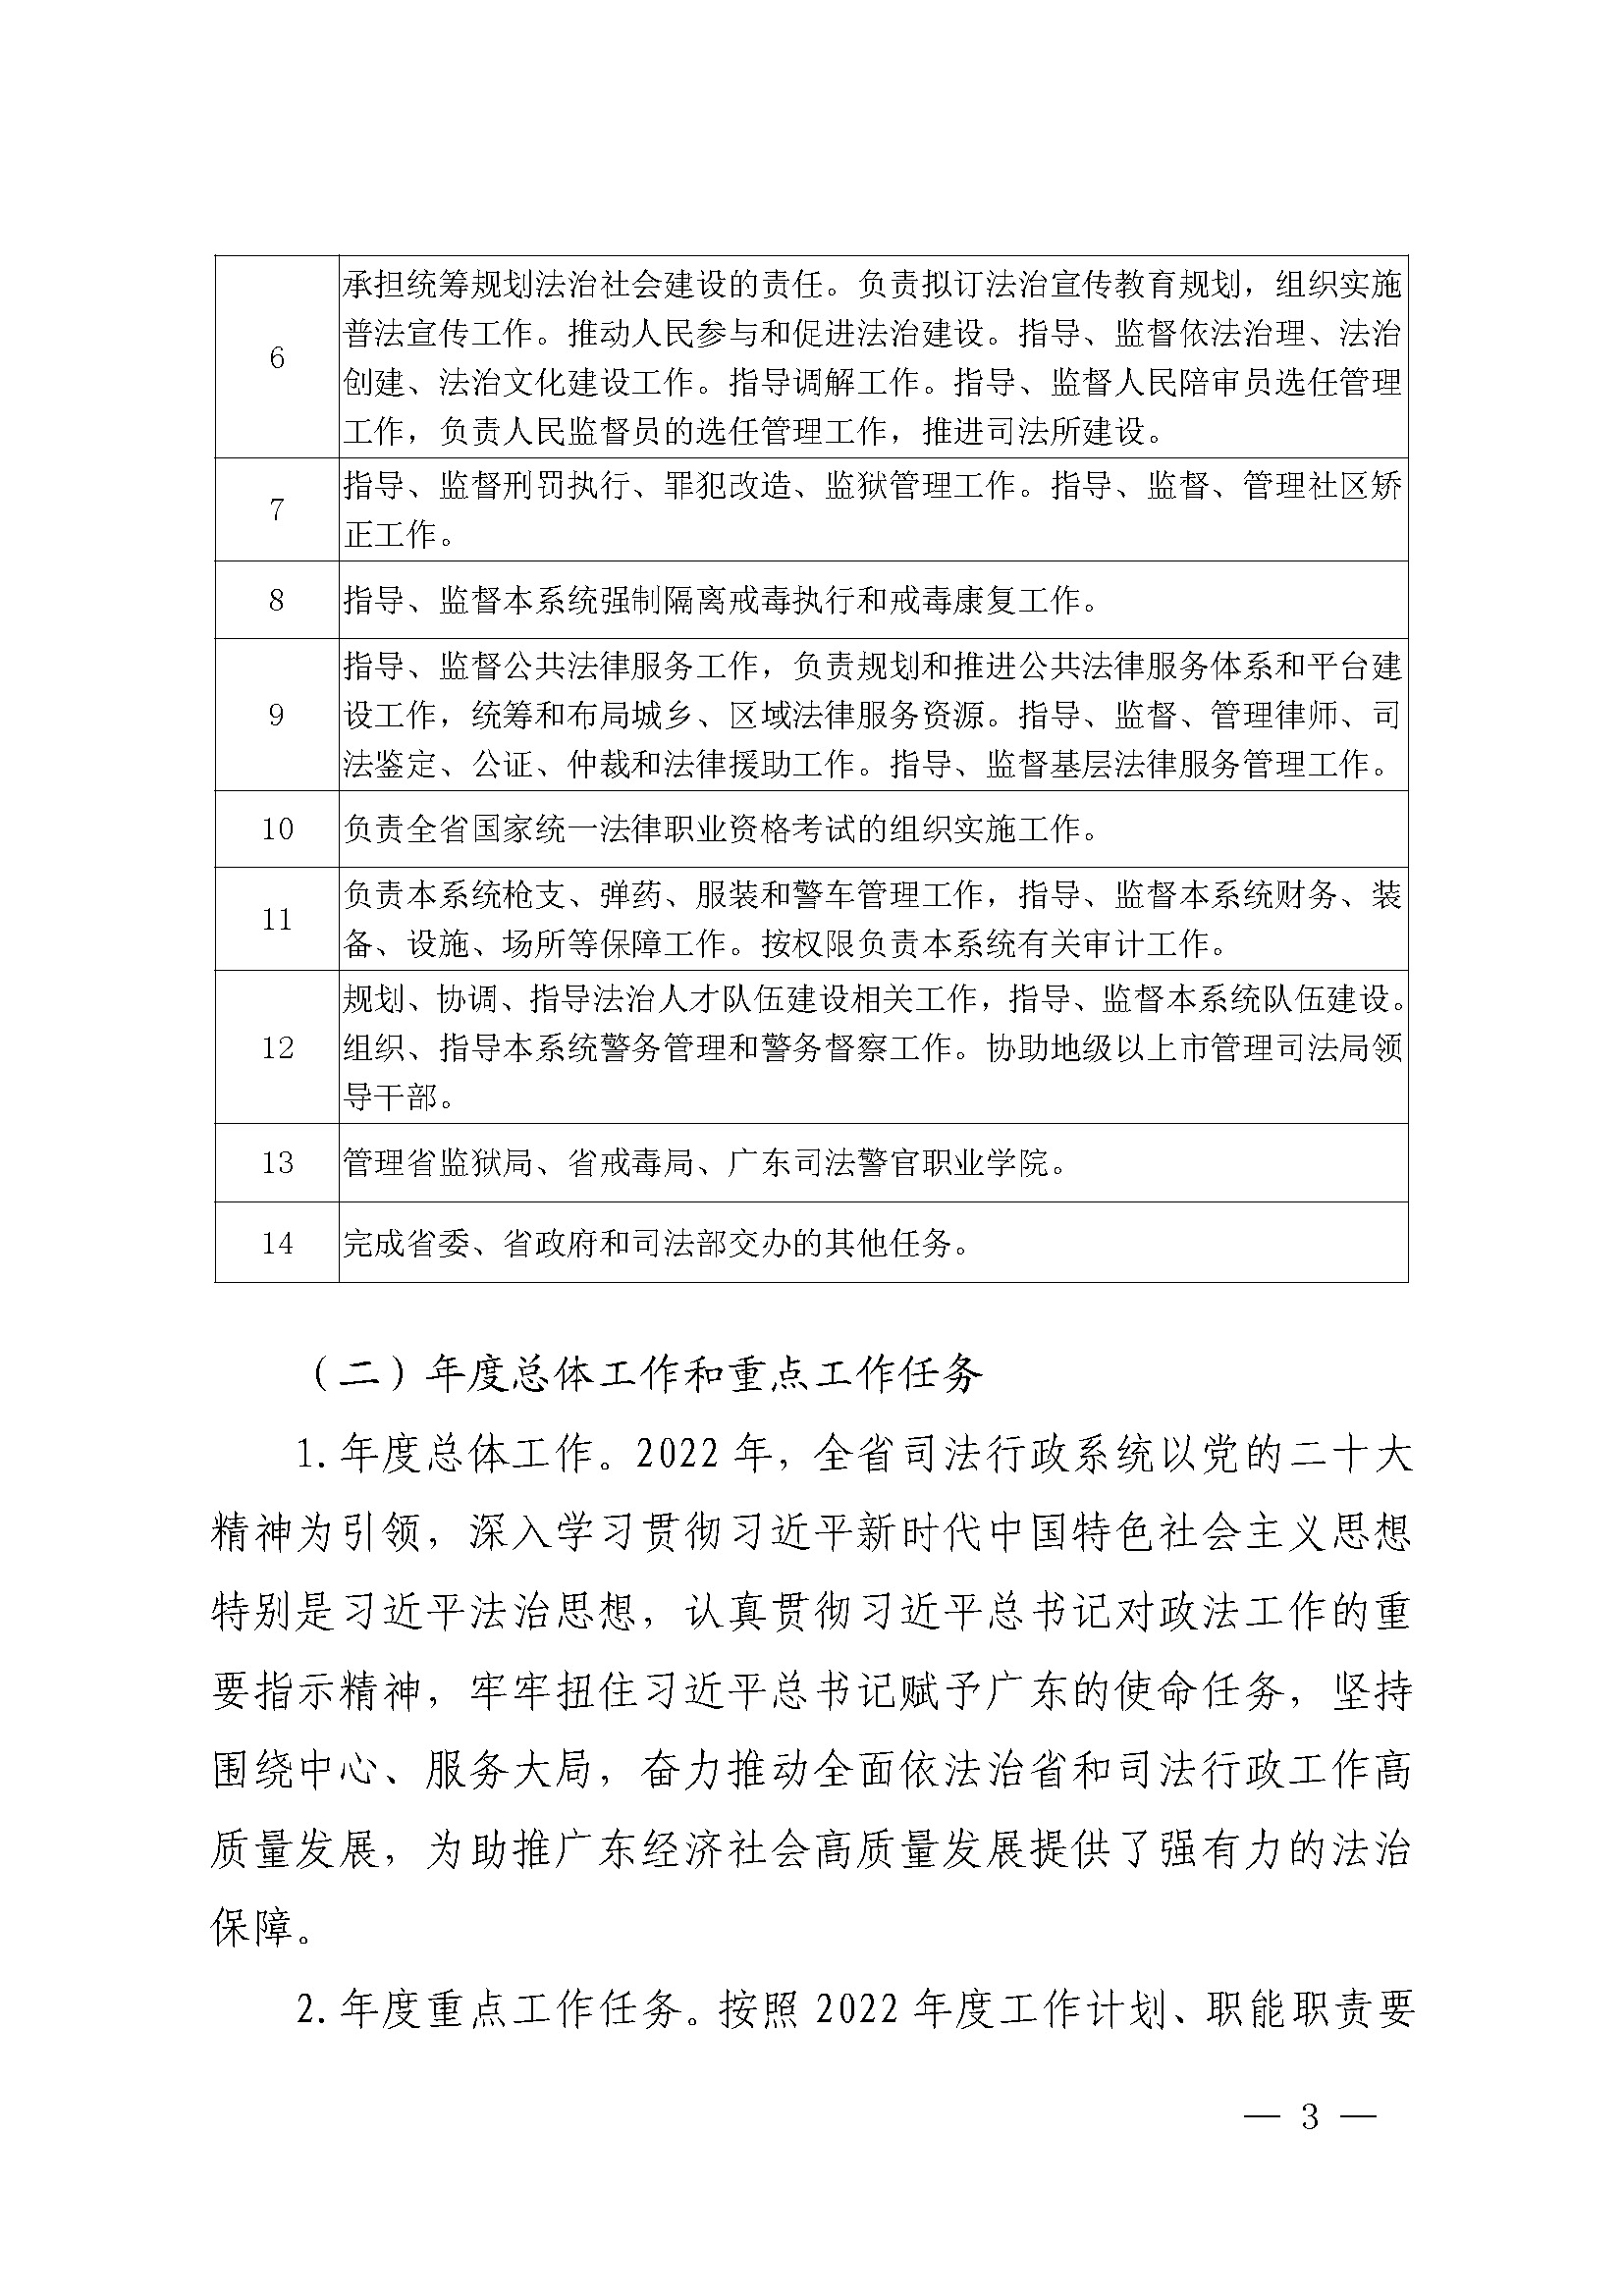 广东省司法厅2022年度部门整体支出绩效自评报告_页面_03.jpg